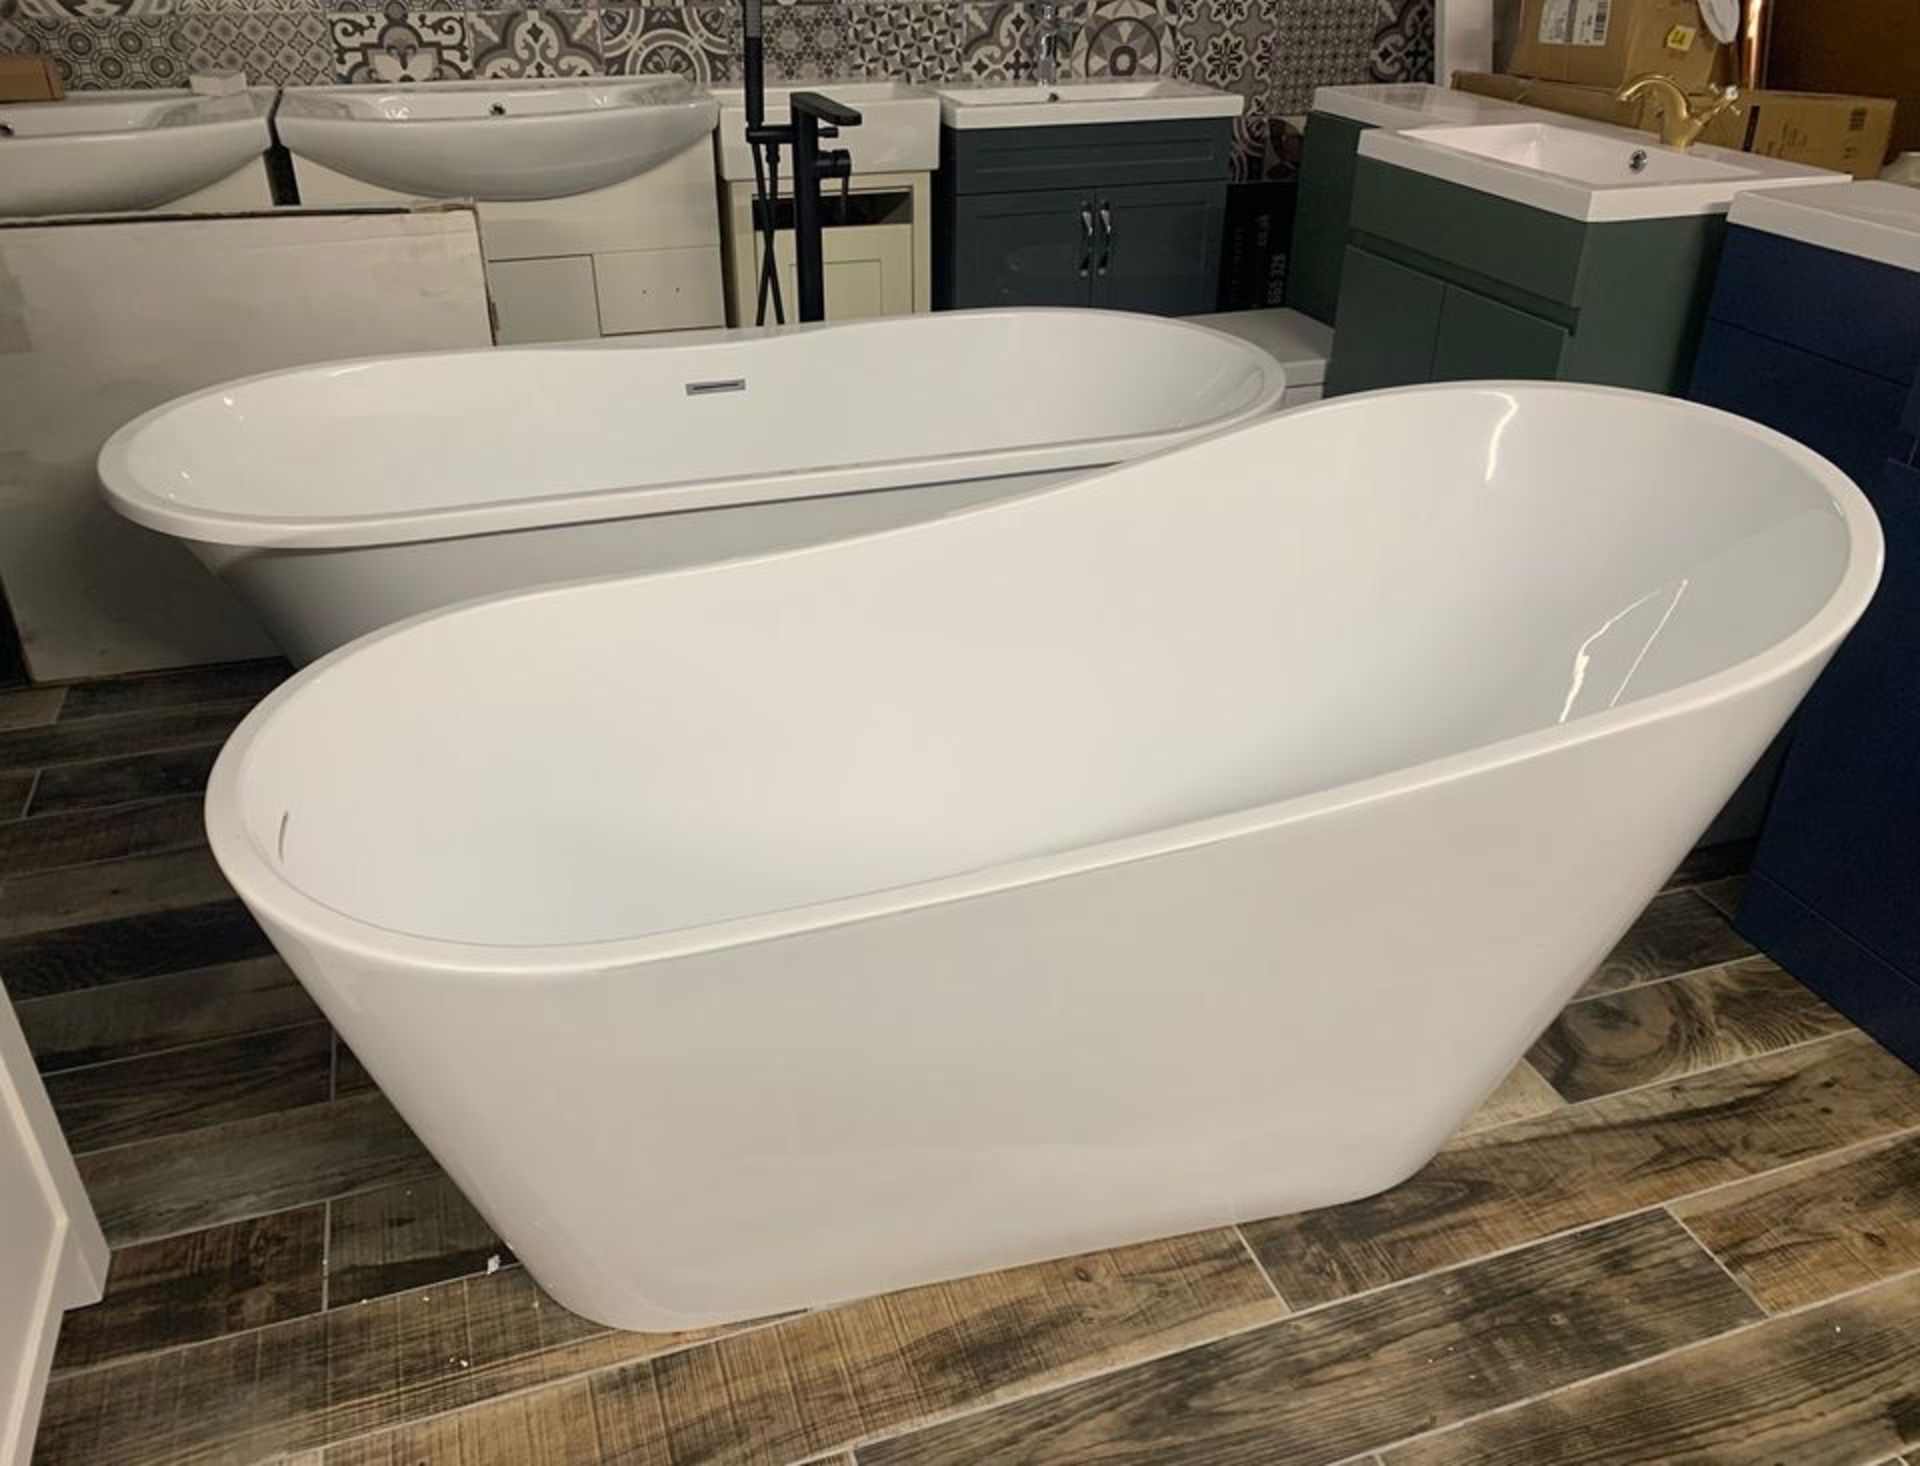 Designer 'CASCADE' White Freestanding Modern Slipper Bath in Arctic White – 1700mm x 740mm - Image 4 of 5